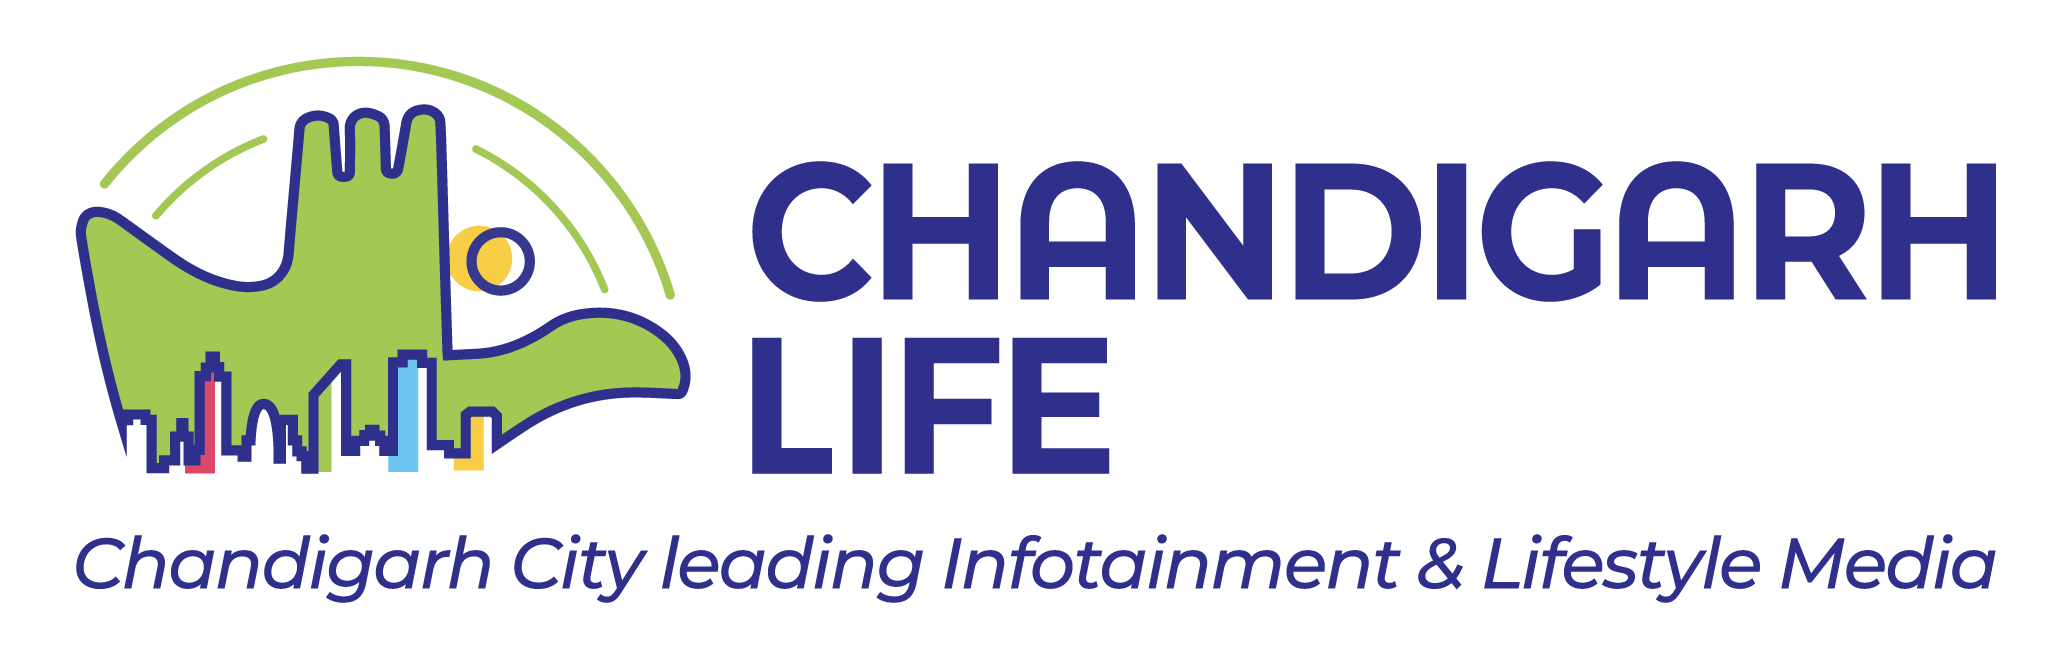 chandigarh life